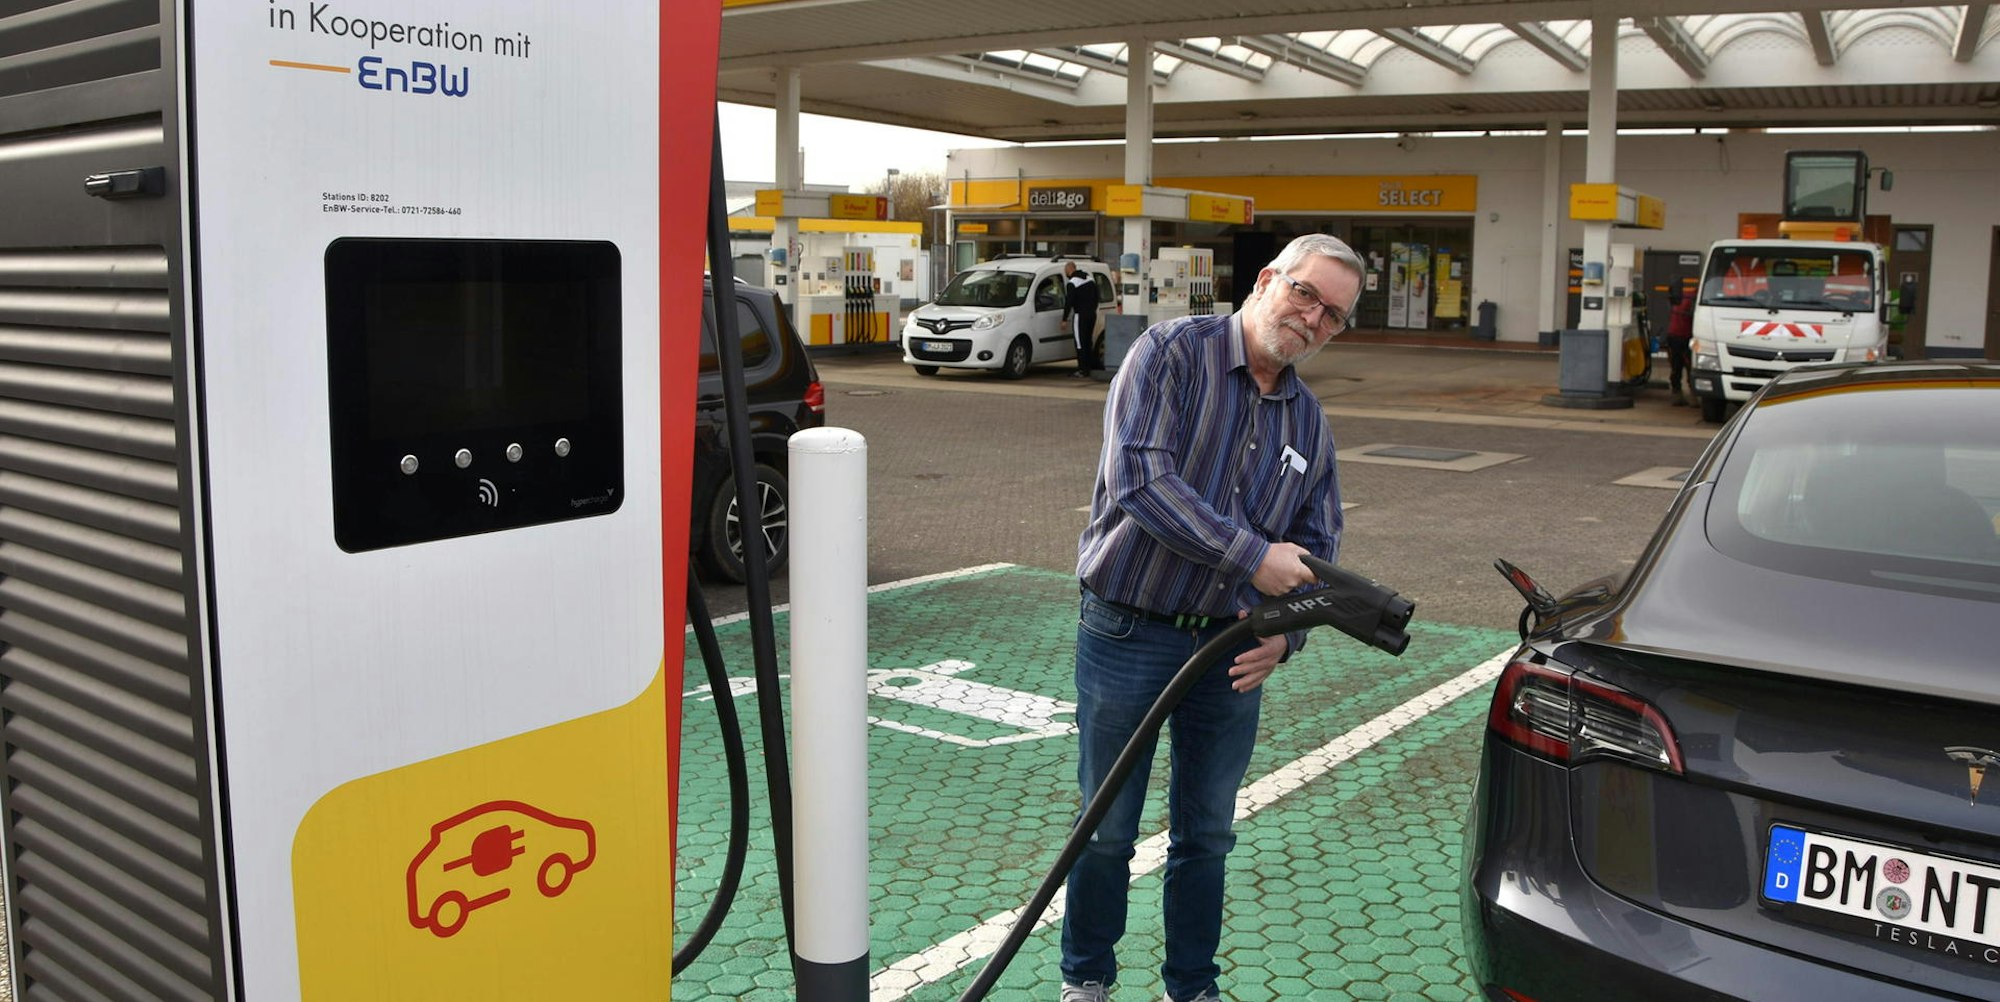 Seit einem Jahr steht die staatlich geförderte Ladesäule an der Shell-Tankstelle in Kenten. In Betrieb ging sie seitdem nicht. Das bedauert auch E-Auto-Fahrer Guido Mies.